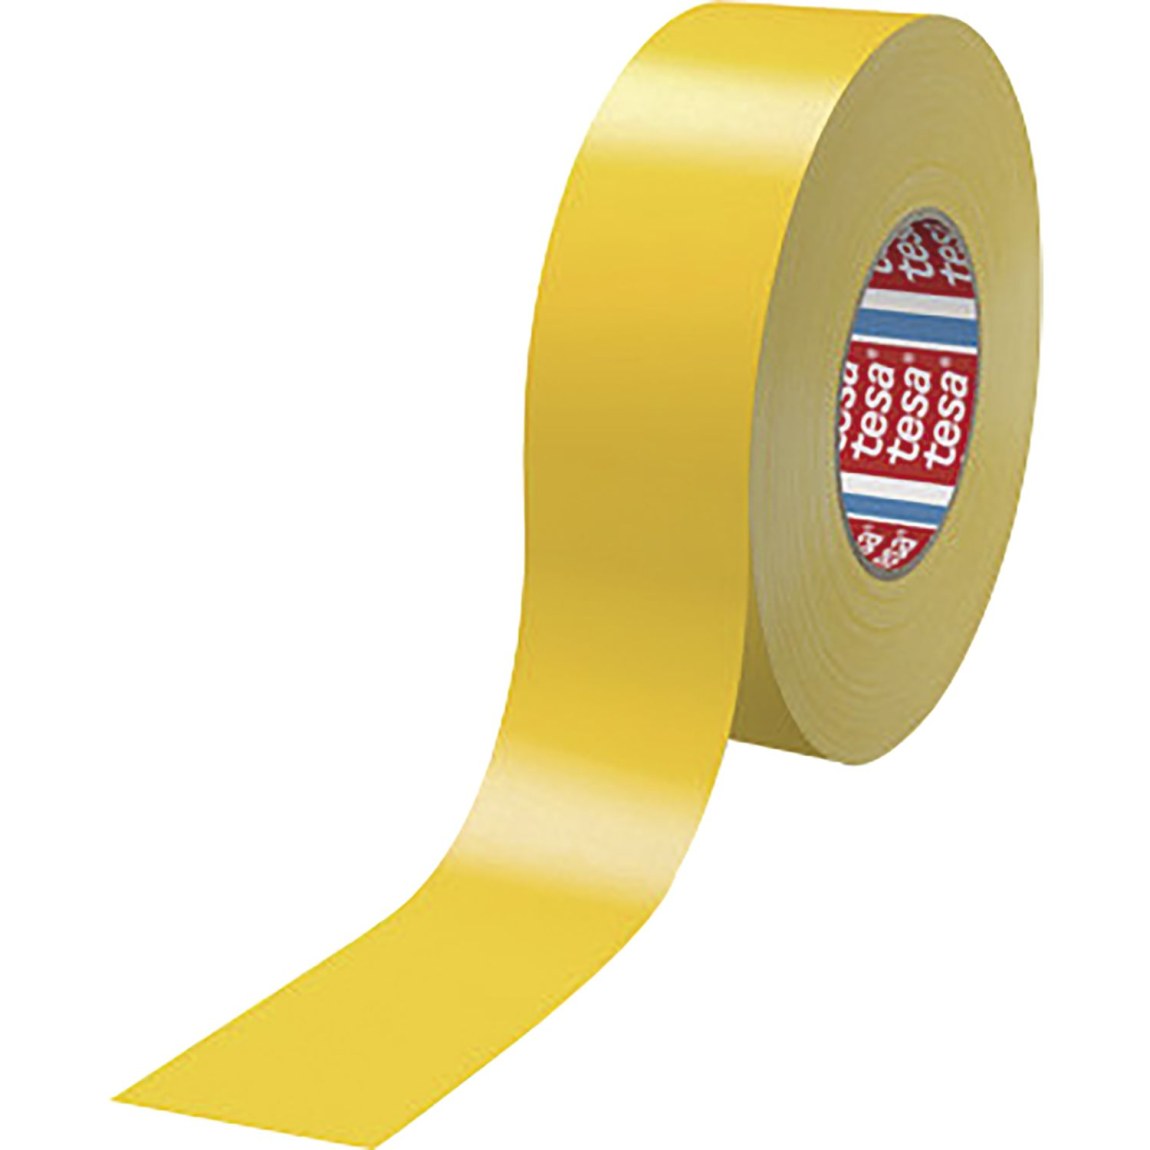 TESA textilní páska 4651 Premium 19 mm x 50 m žlutá